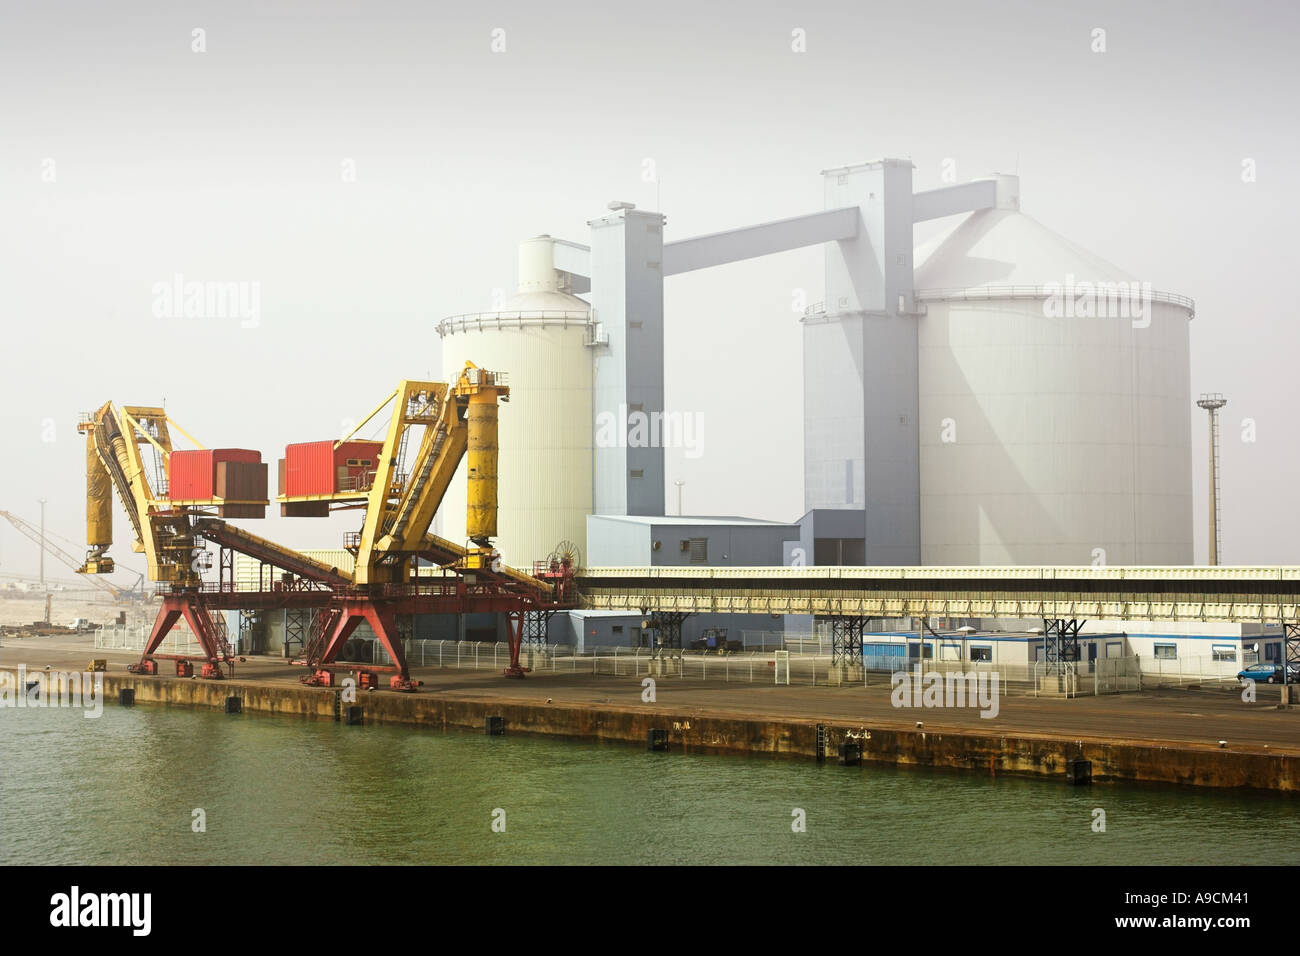 Les grues et les silos du port de Calais, France, Europe Banque D'Images